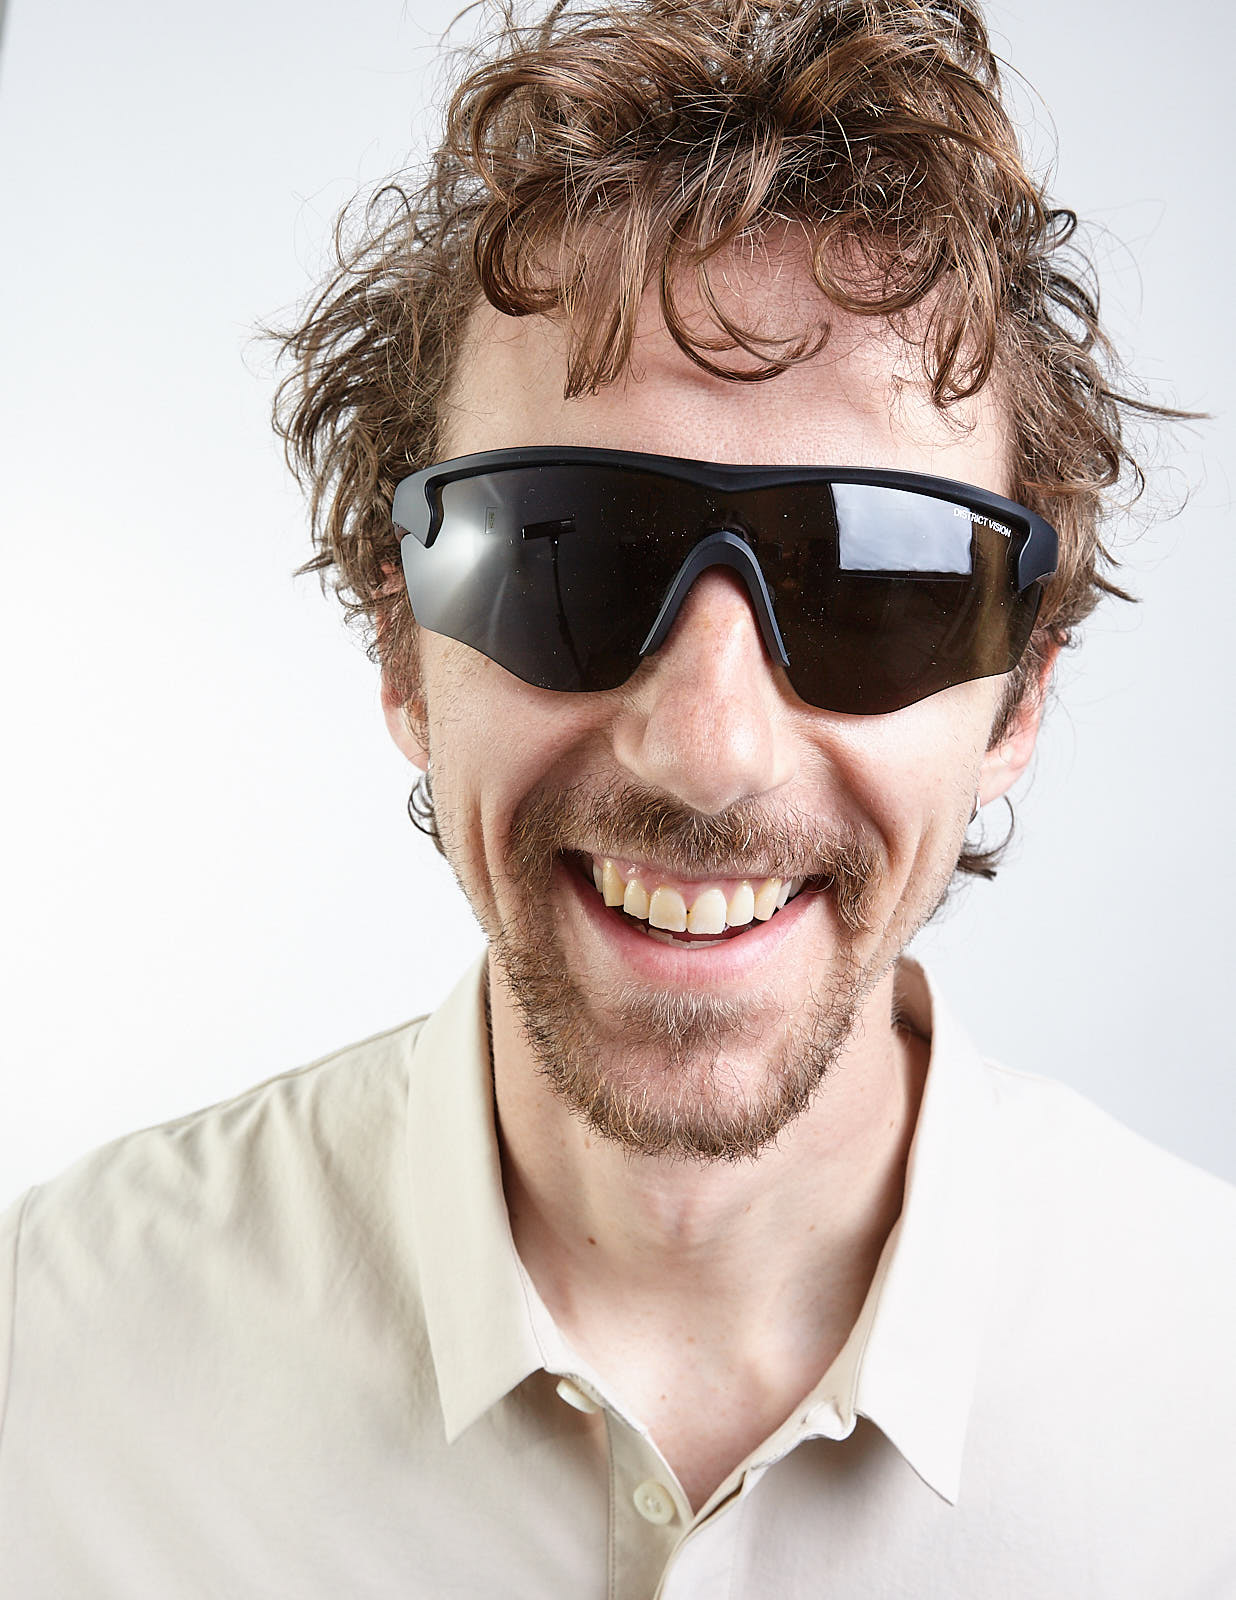 DISTRICT VISION - Junya Racer D-Frame Polycarbonate Sunglasses